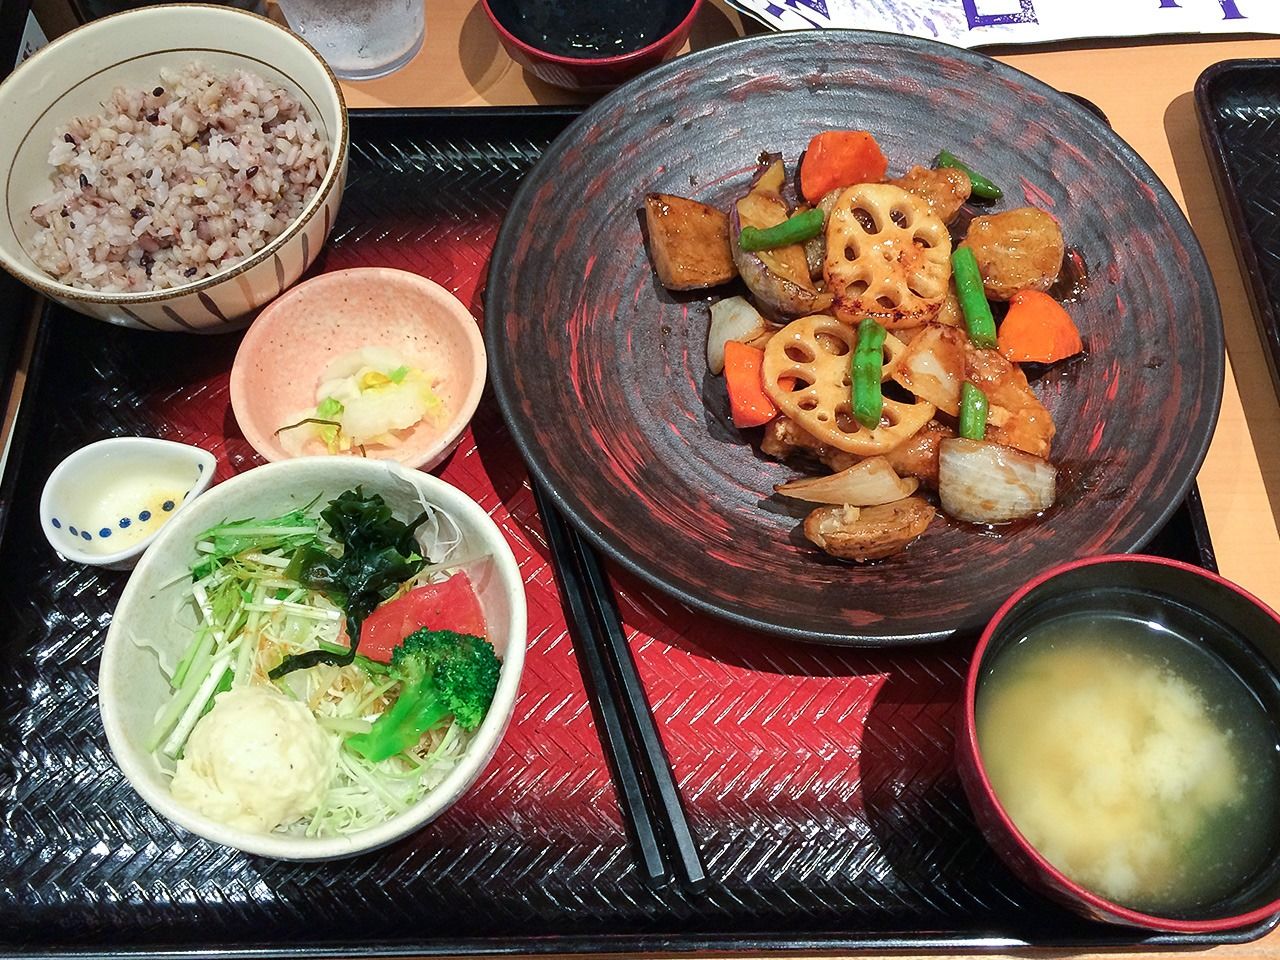 在日本吃饭的时候应该注意哪些礼仪 - 哔哩哔哩